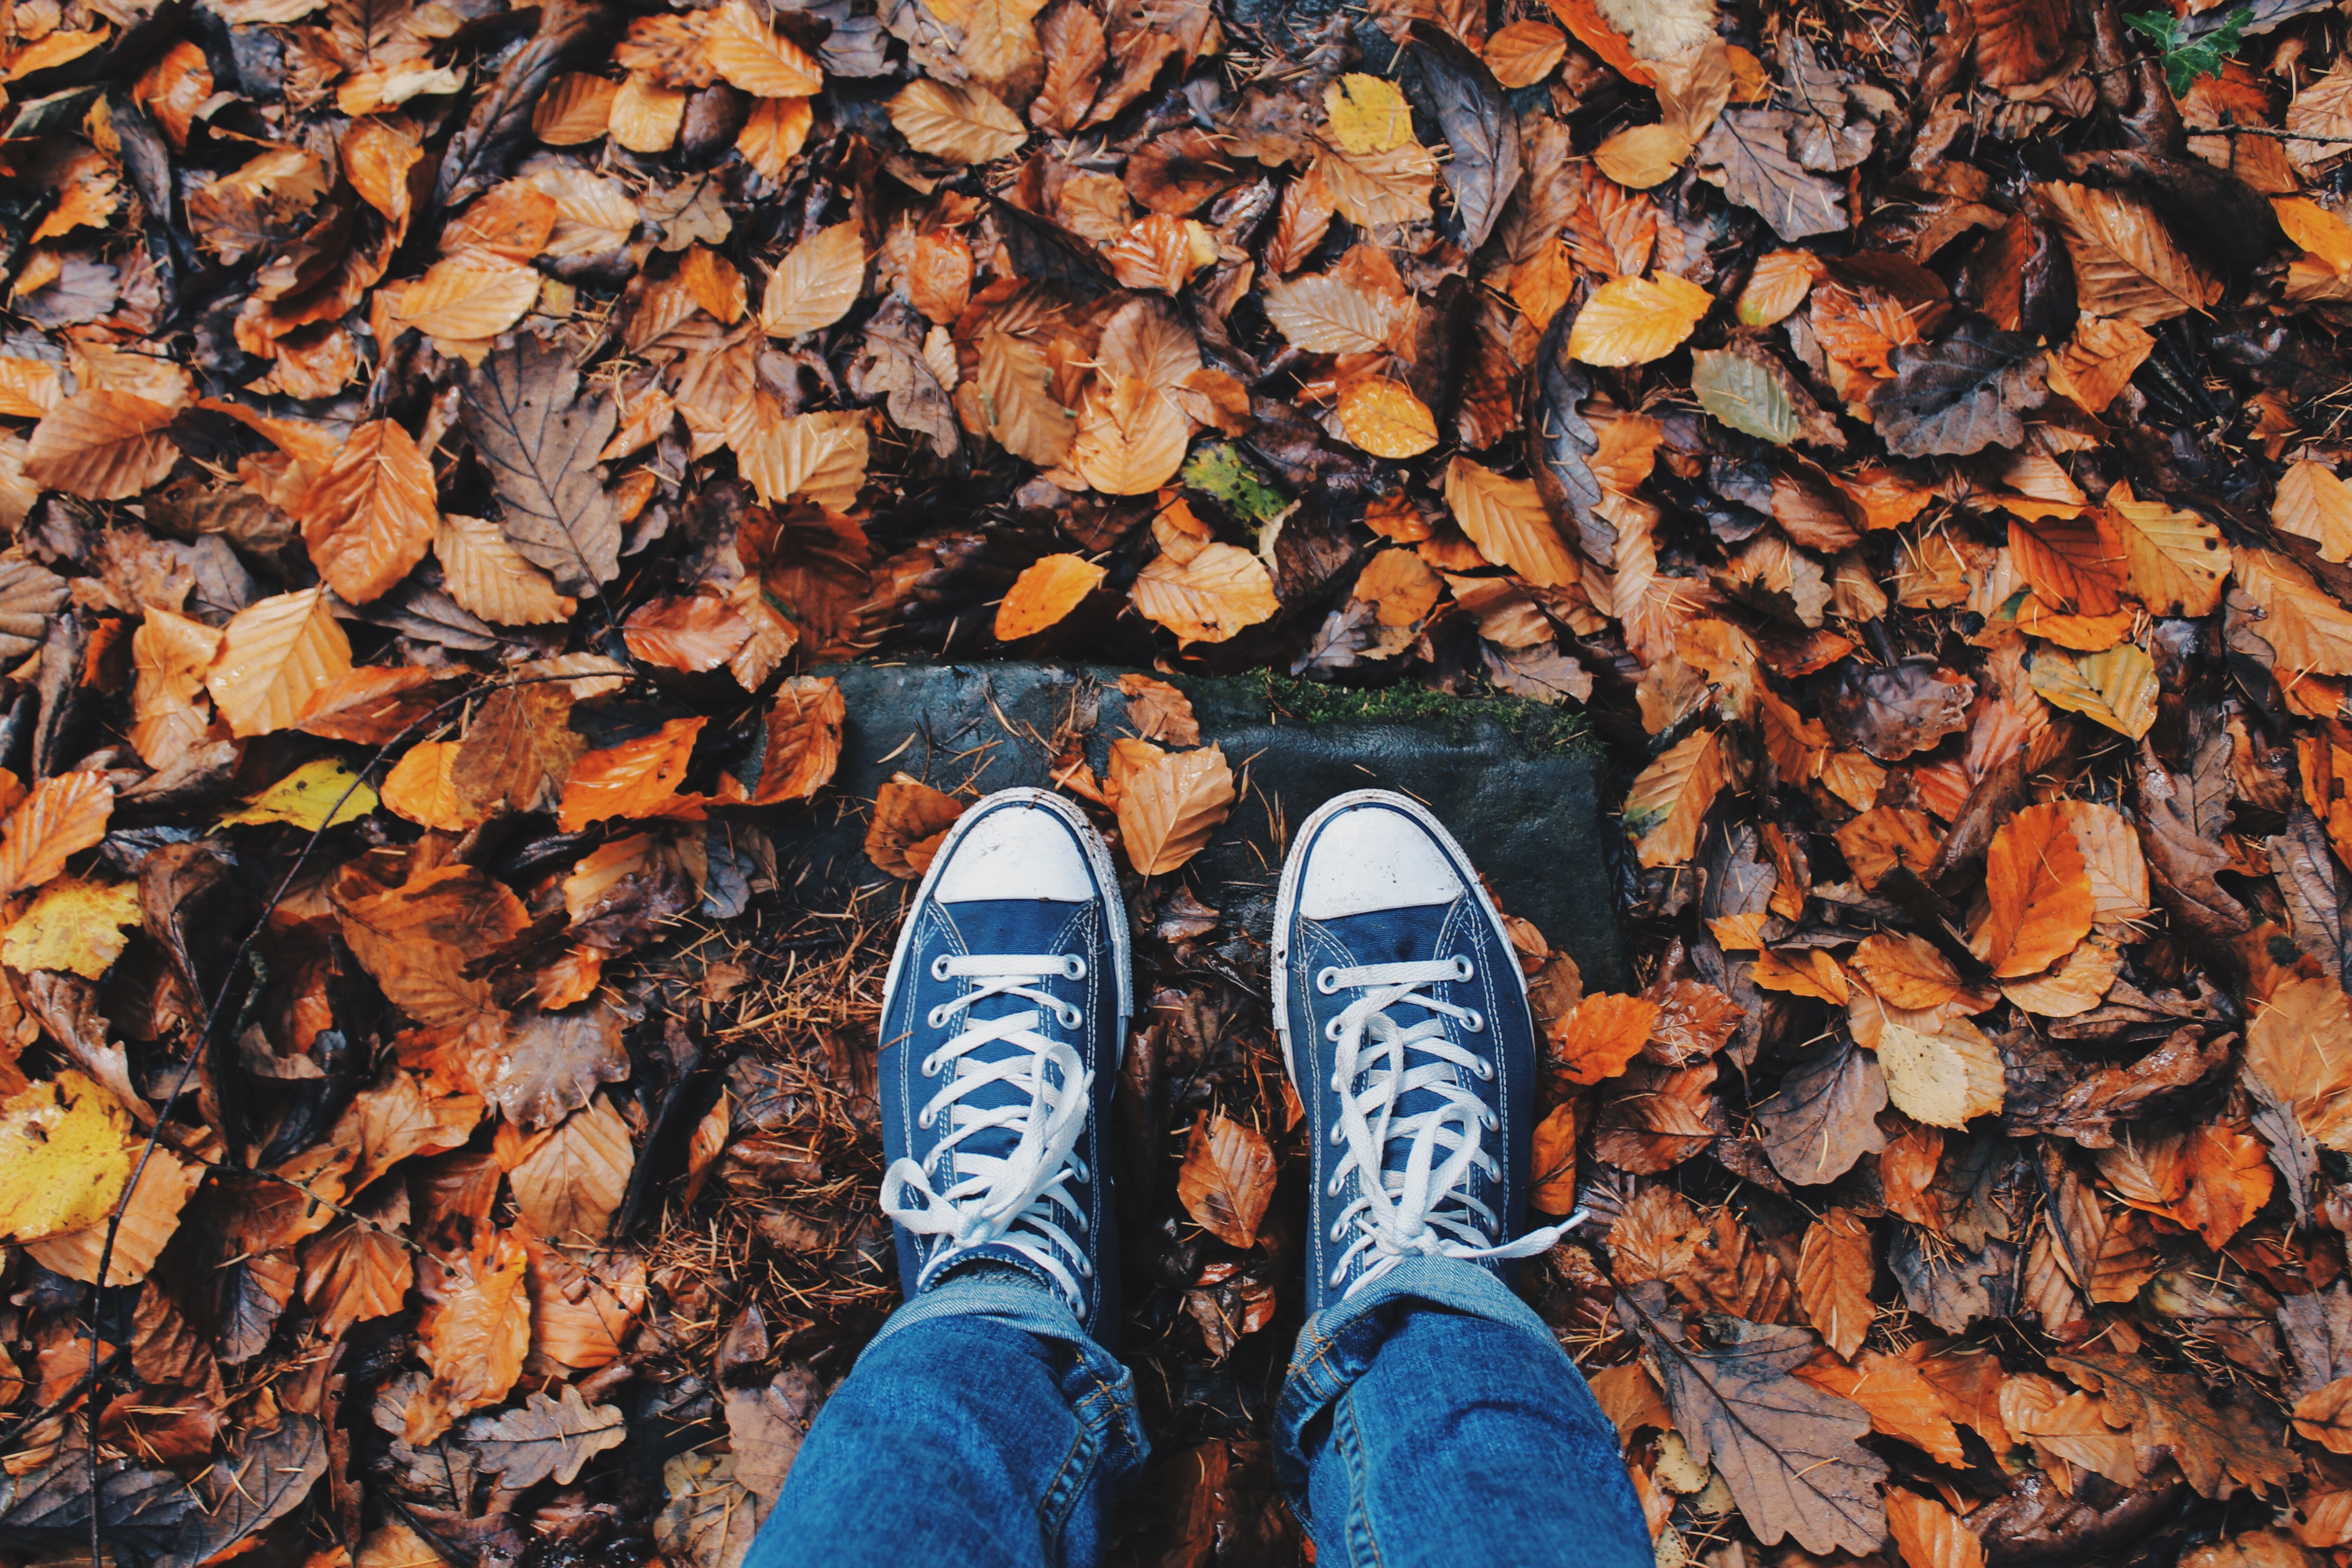 A walk through the fallen leaves